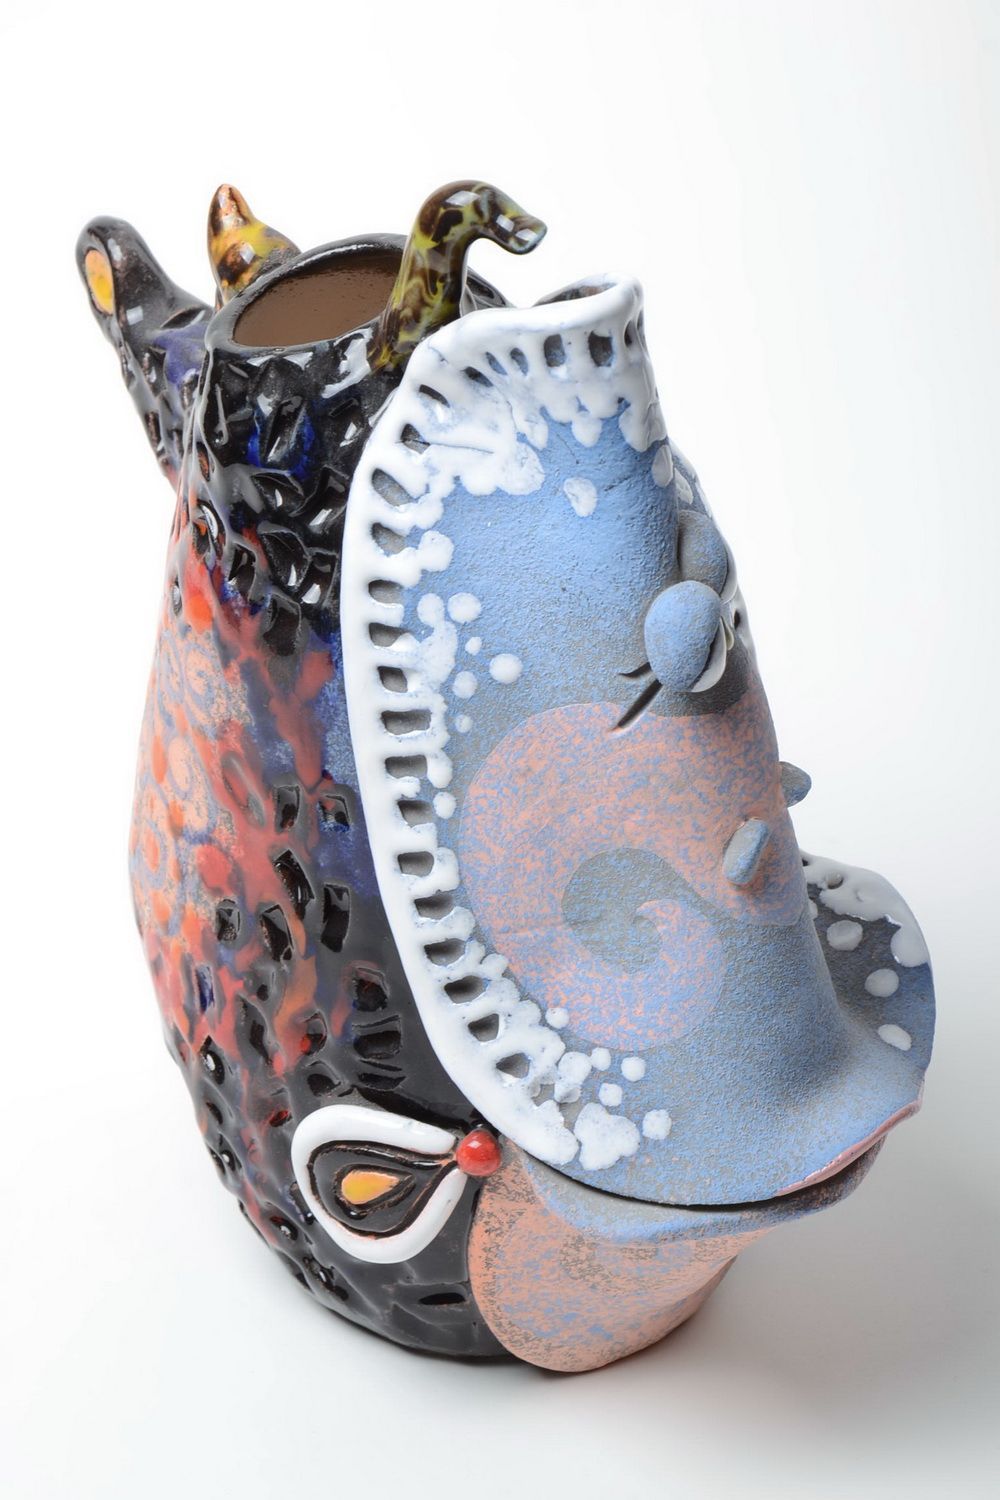 Ton Vase handmade in Form vom Fisch mit Pigmenten bemalt 1.8 L Künstlerarbeit foto 5